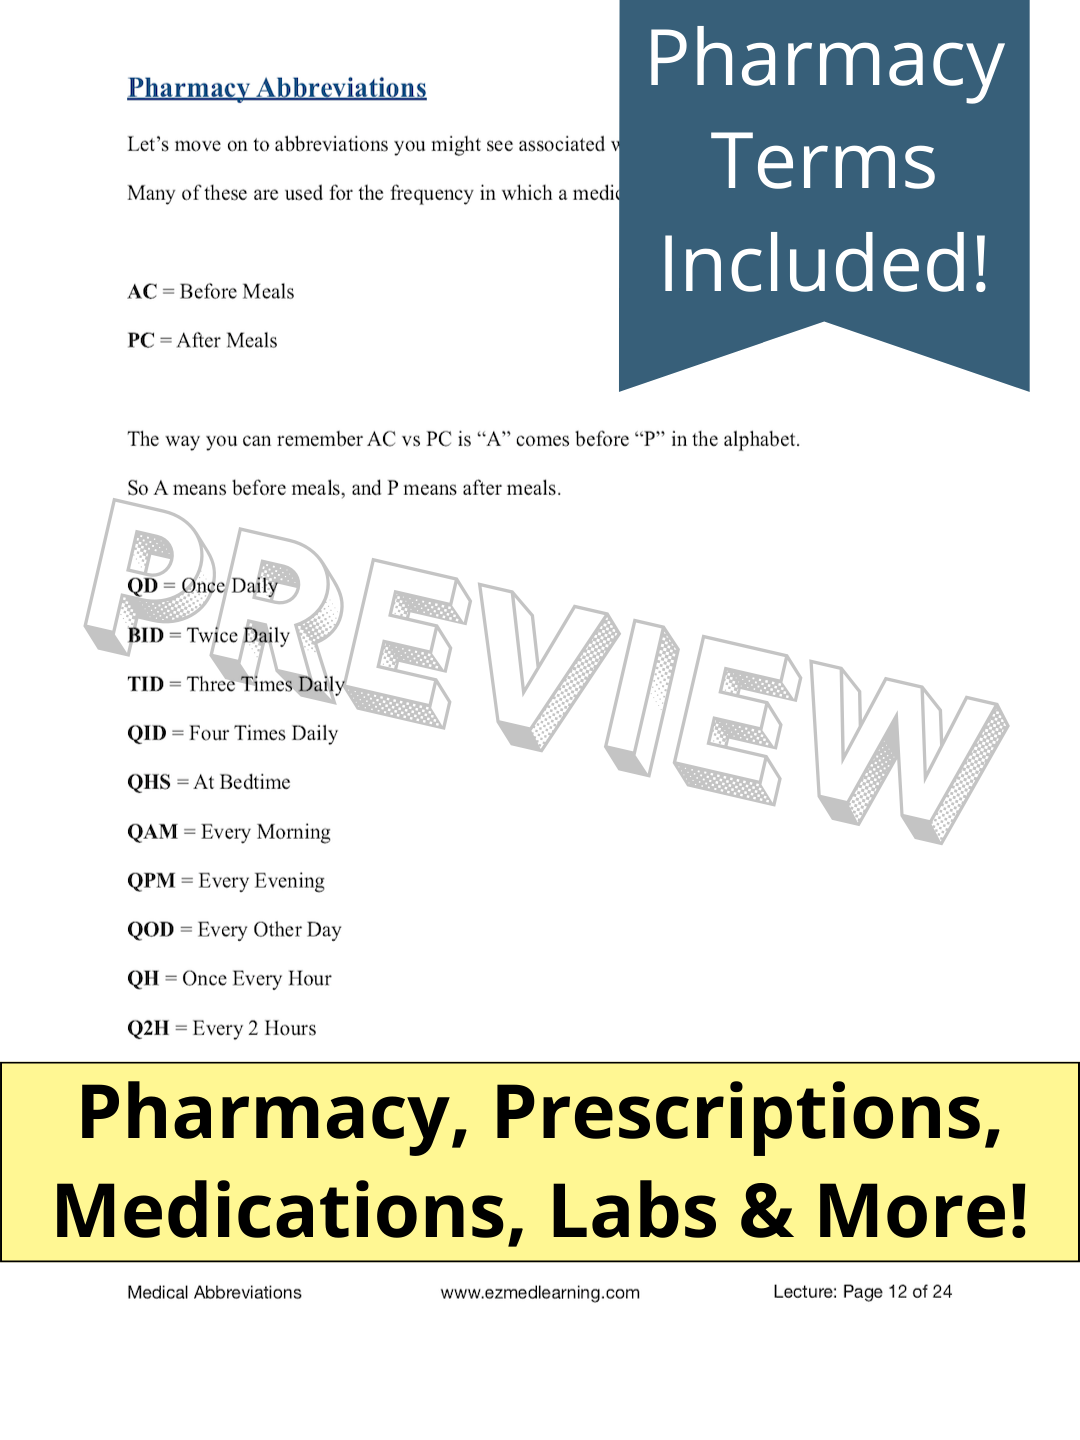 Medical Abbreviations [PDF Lecture]